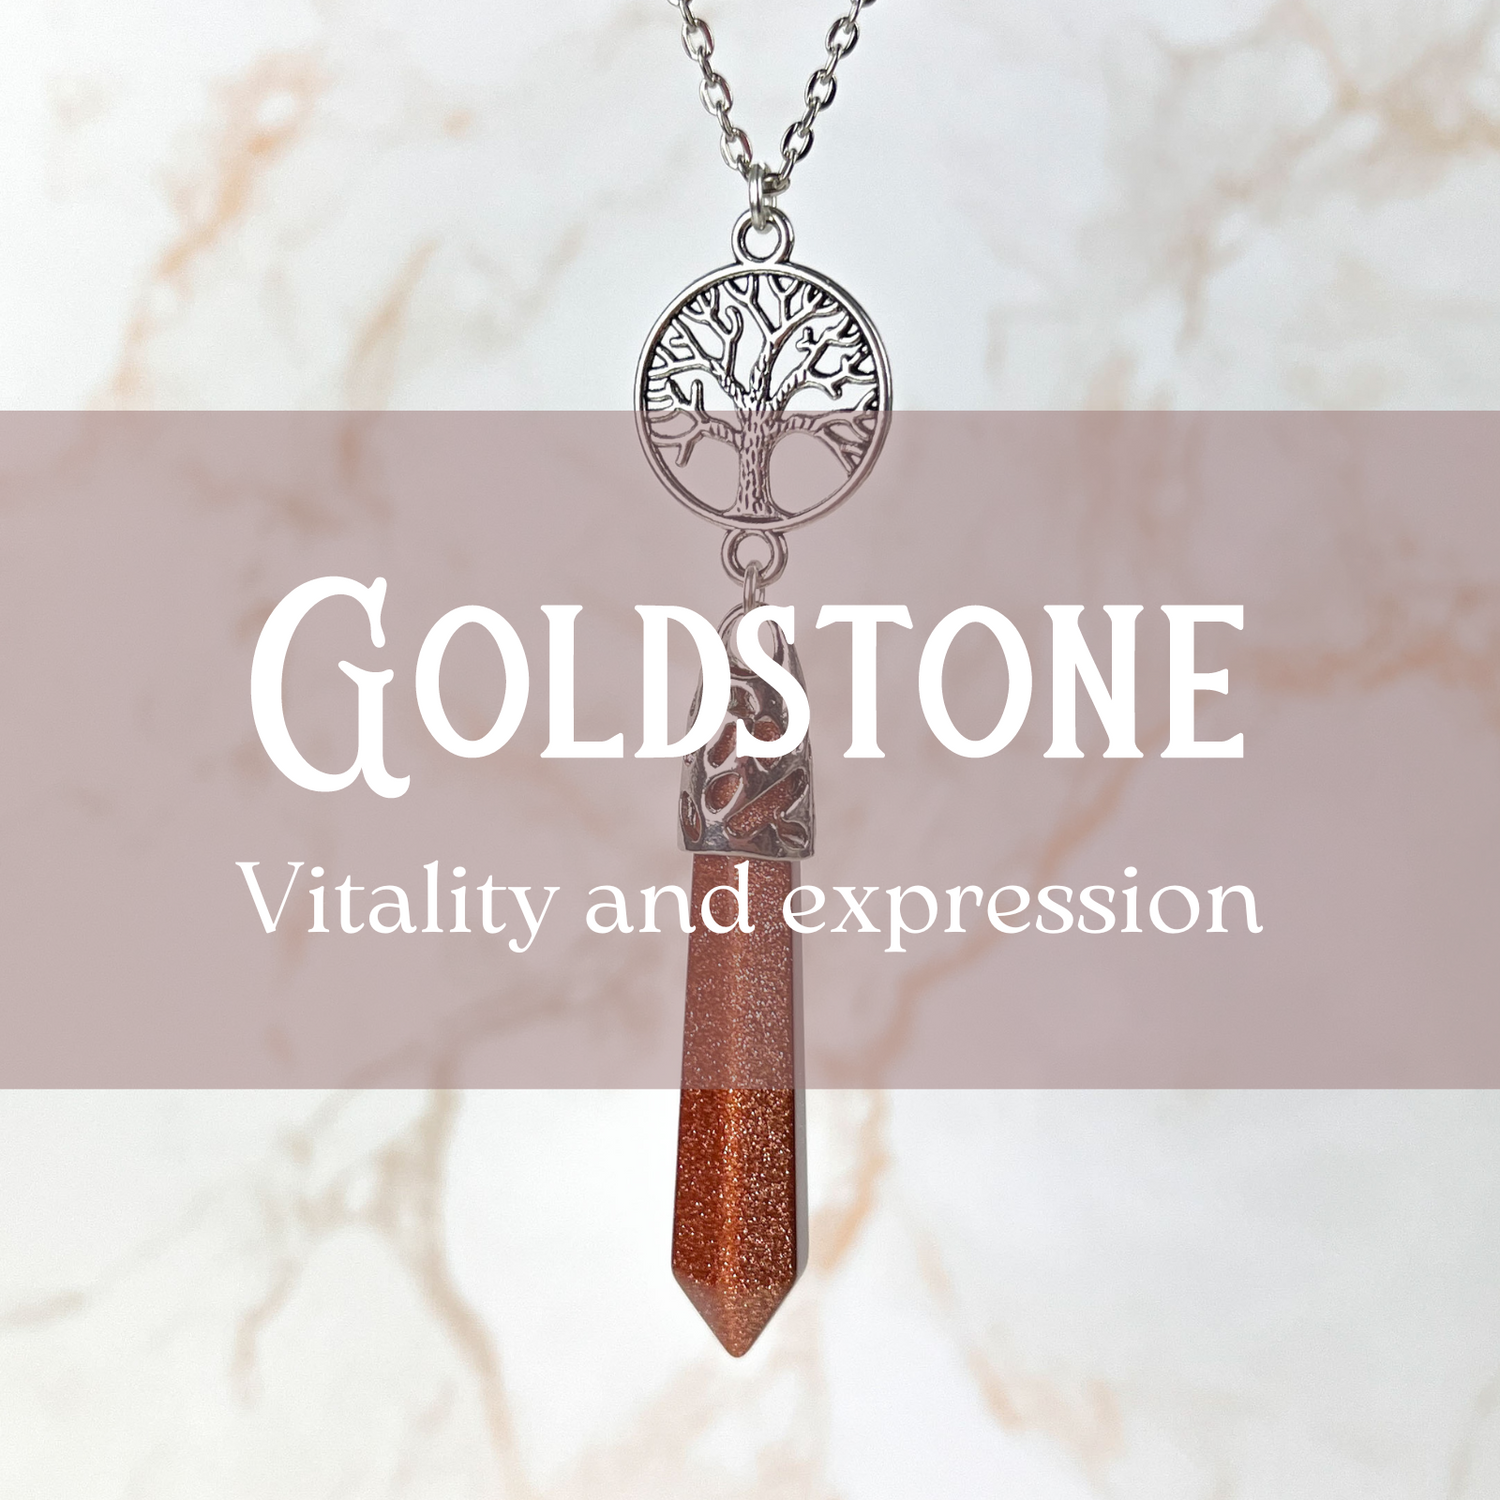 Goldstone jewelry